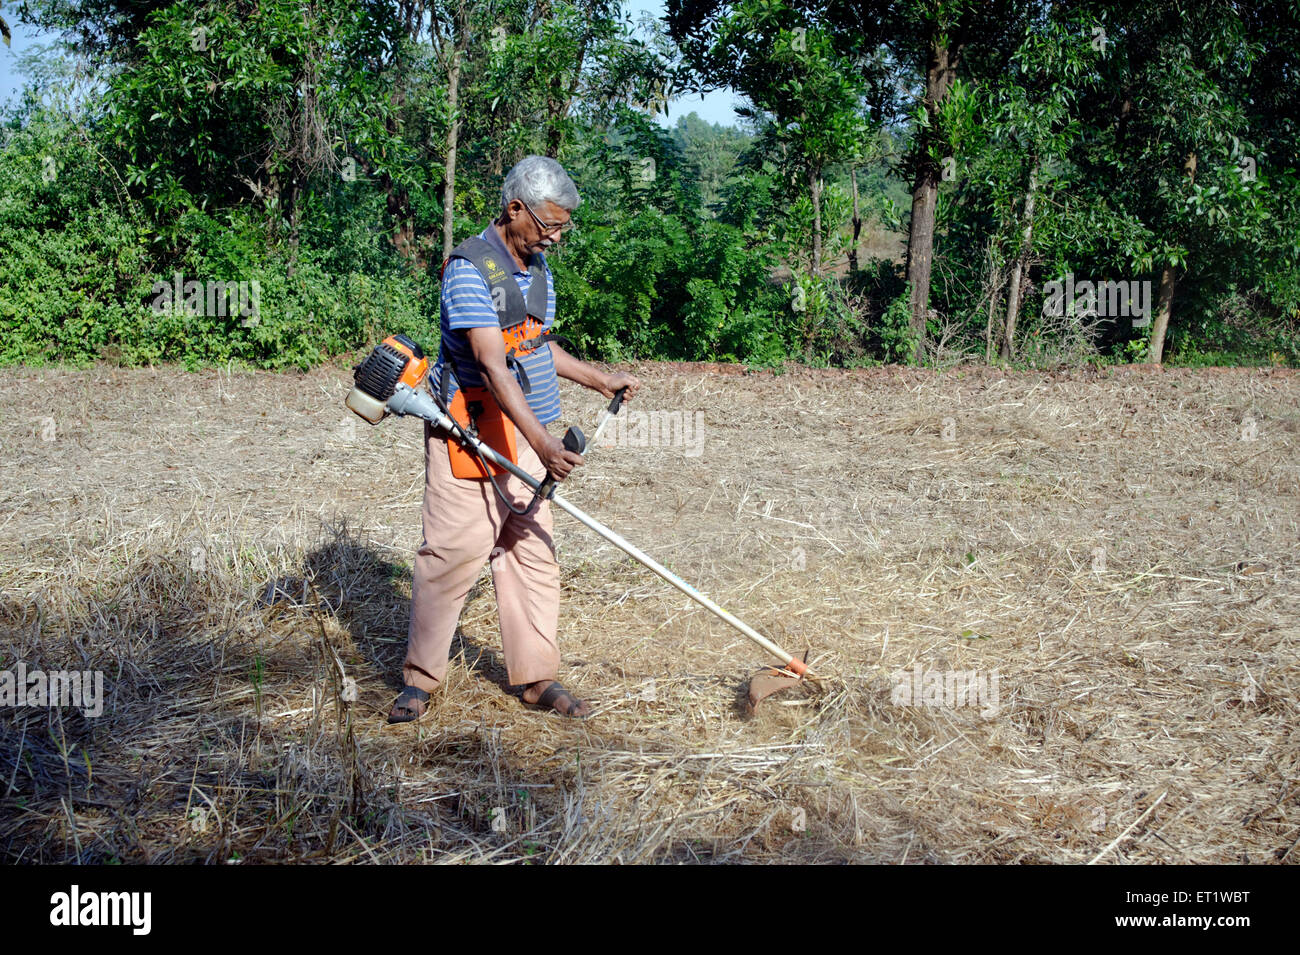 Bauer mit Grass schneiden Maschine Konkan Maharashtra Indien Herr #556 Stockfoto